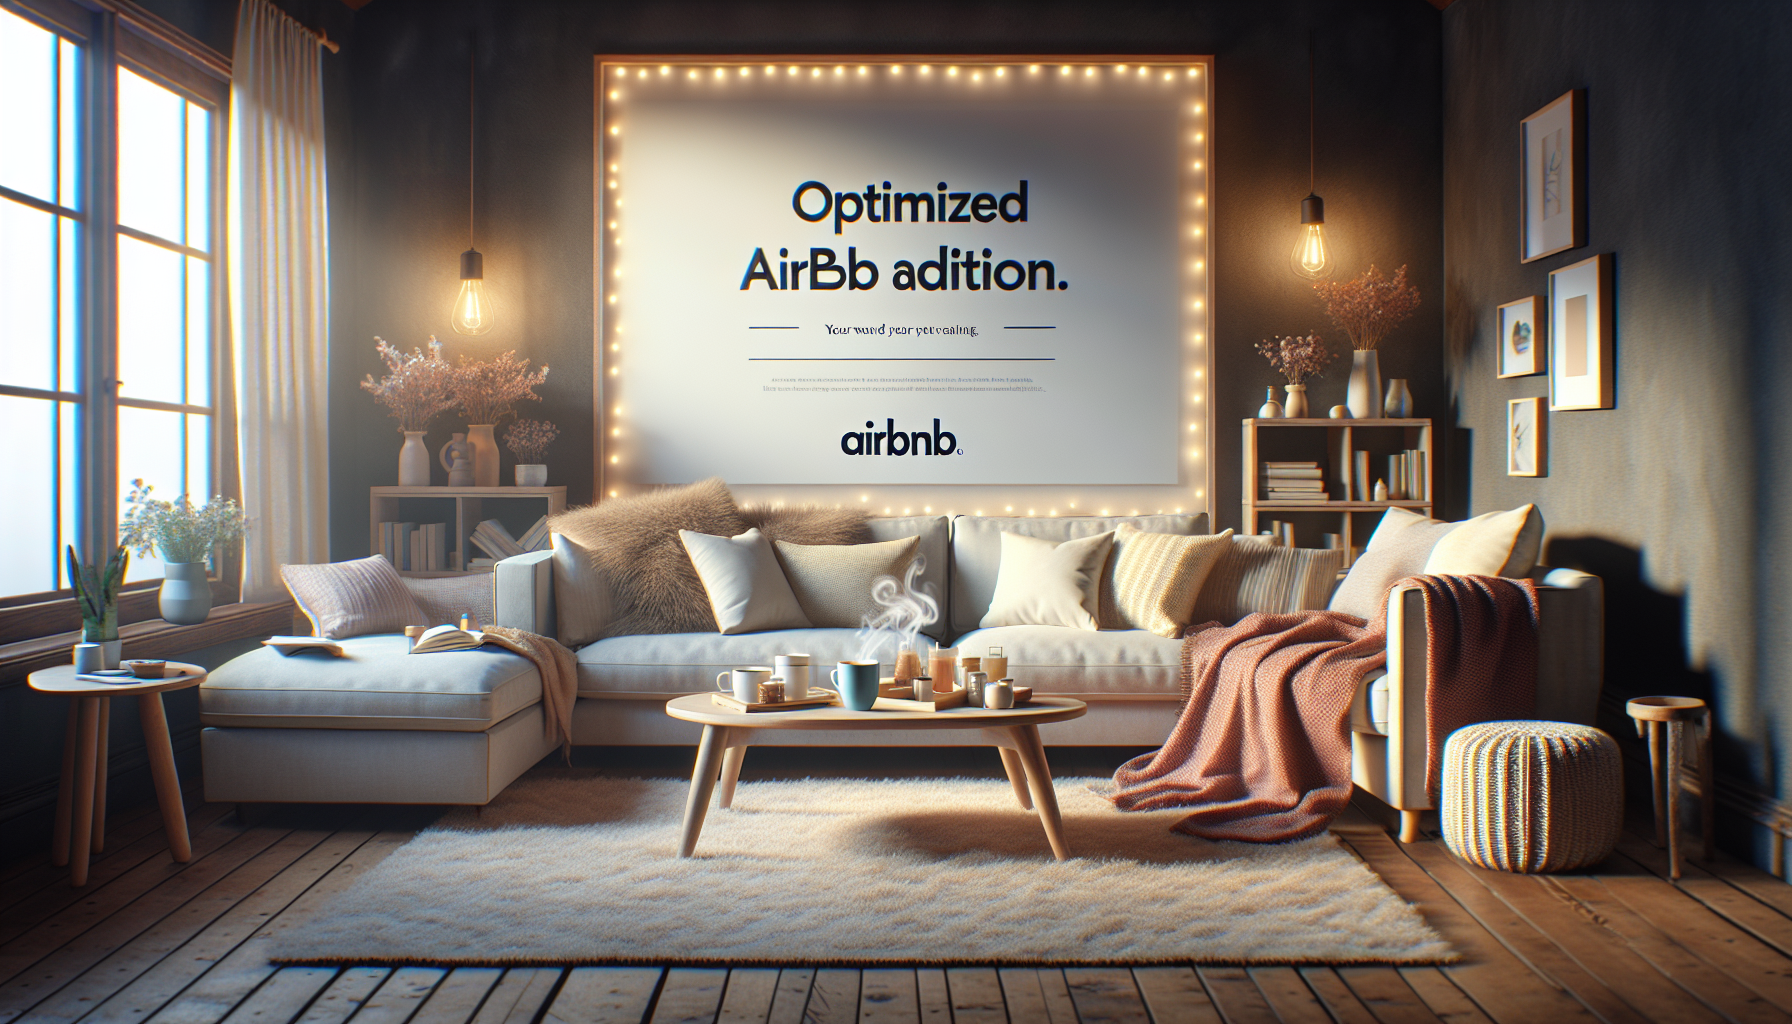 découvrez comment améliorer la visibilité et l'attractivité de vos annonces sur airbnb grâce à des astuces et conseils efficaces.